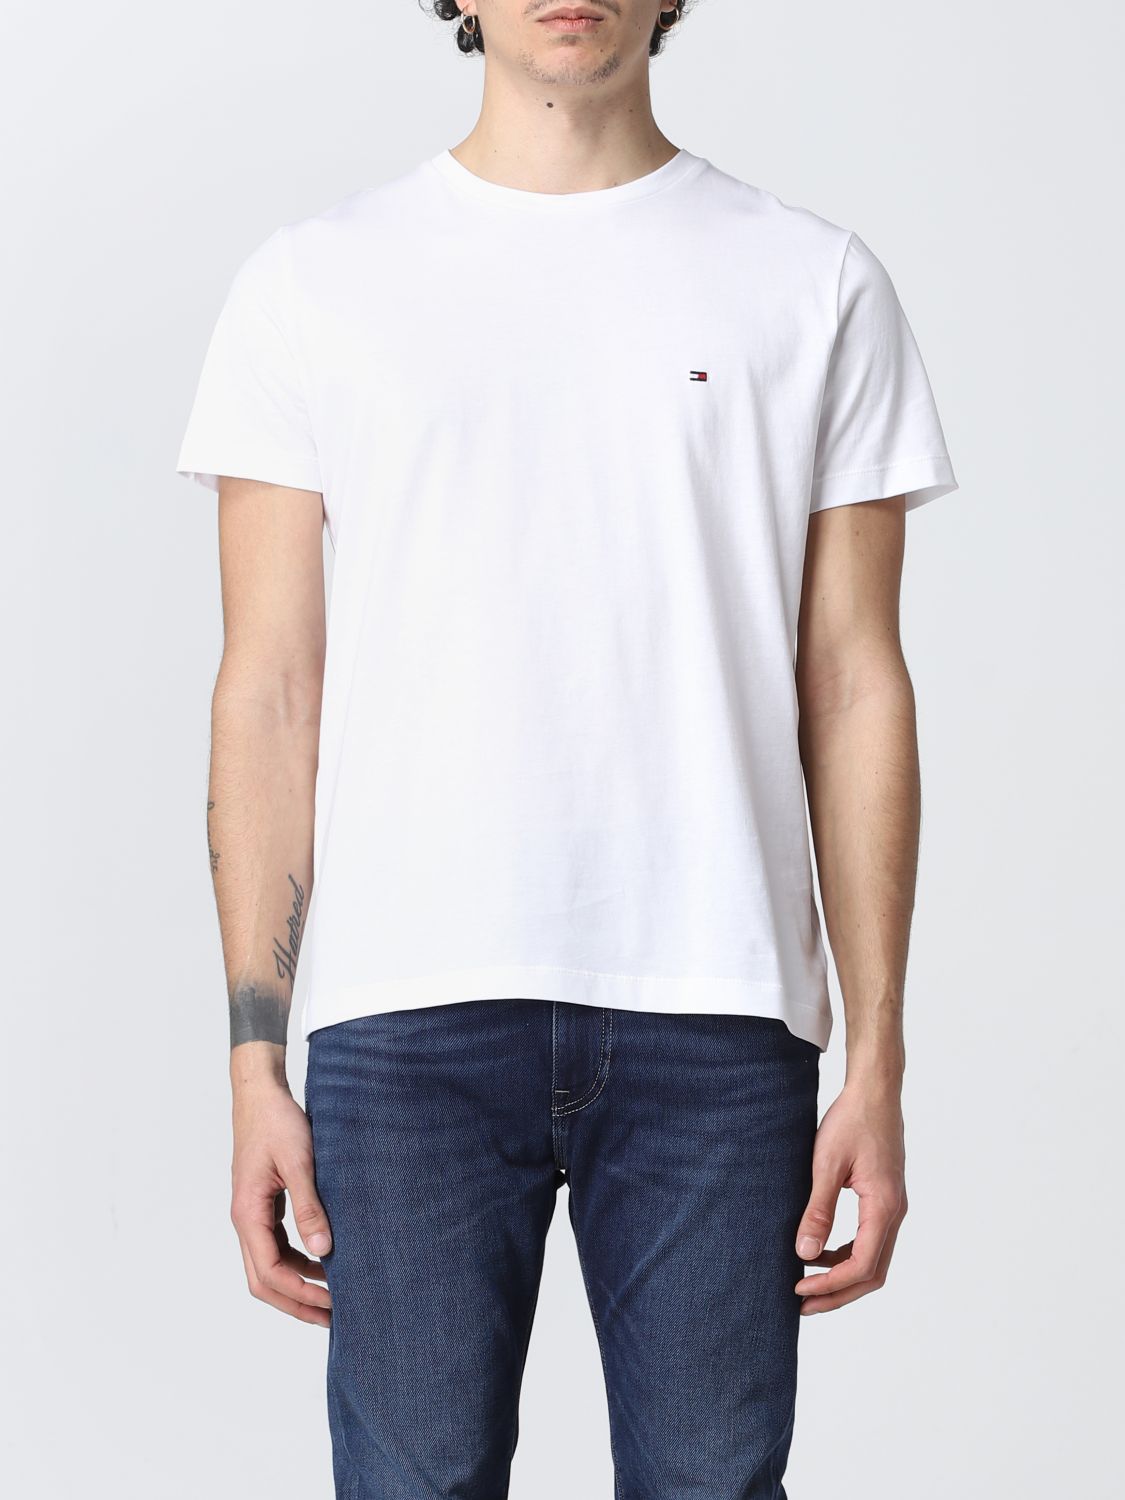 Tommy Hilfiger Outlet: T-shirt men - White | Tommy Hilfiger t-shirt ...